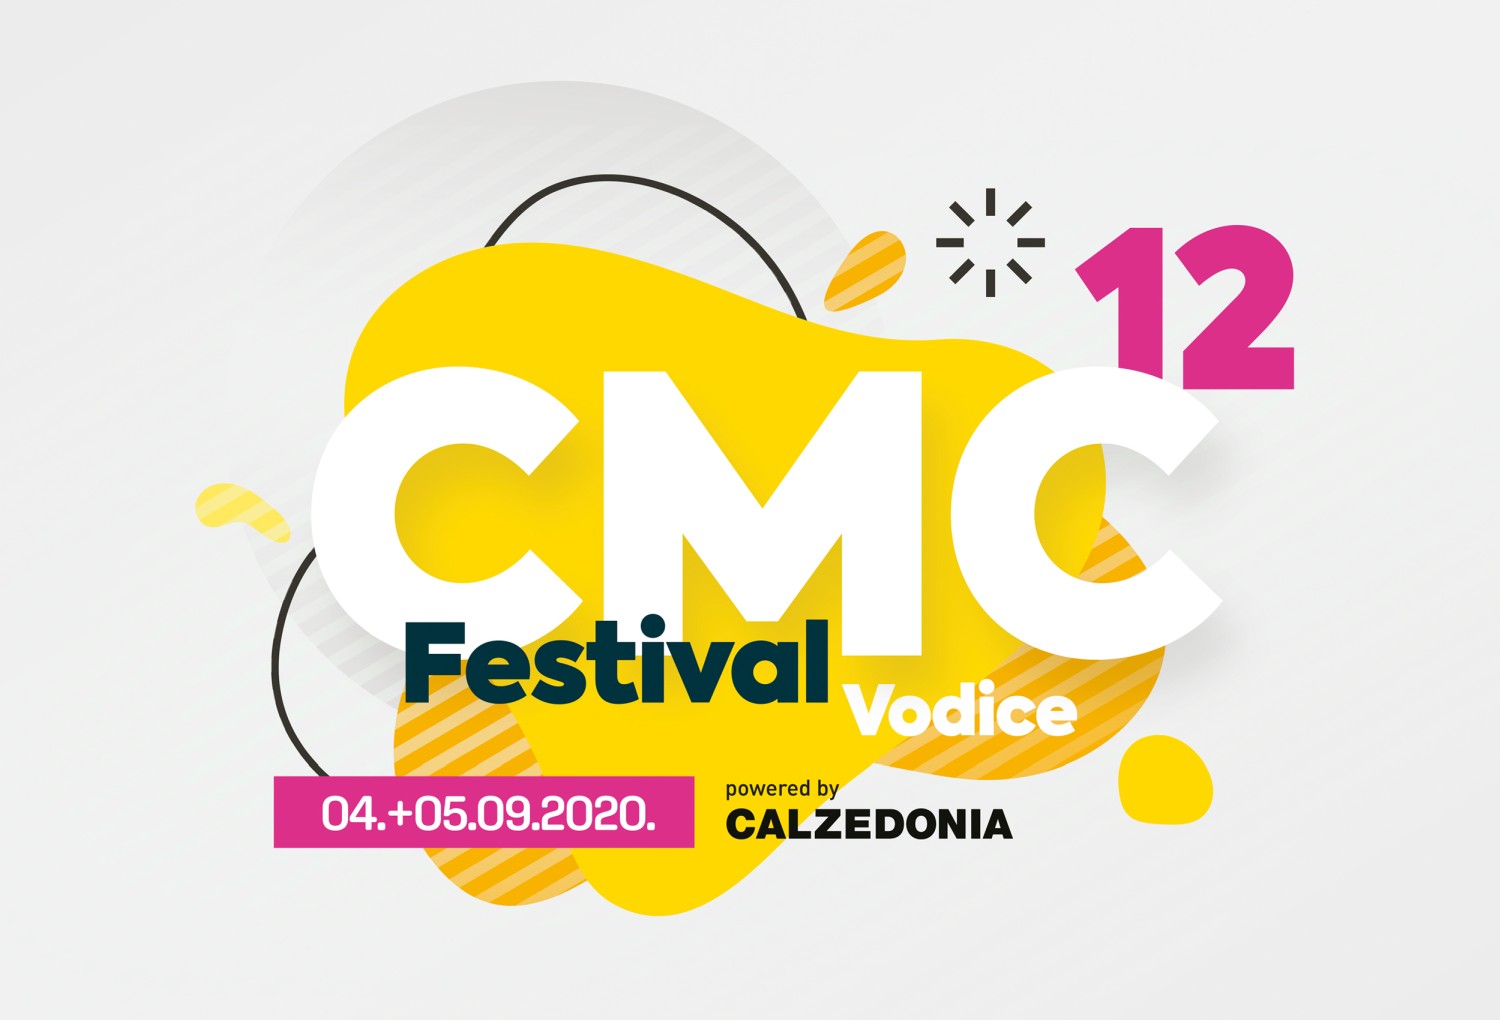 Poslušajte sve pjesme CMC festivala Vodice 2020. powered by Calzedonia